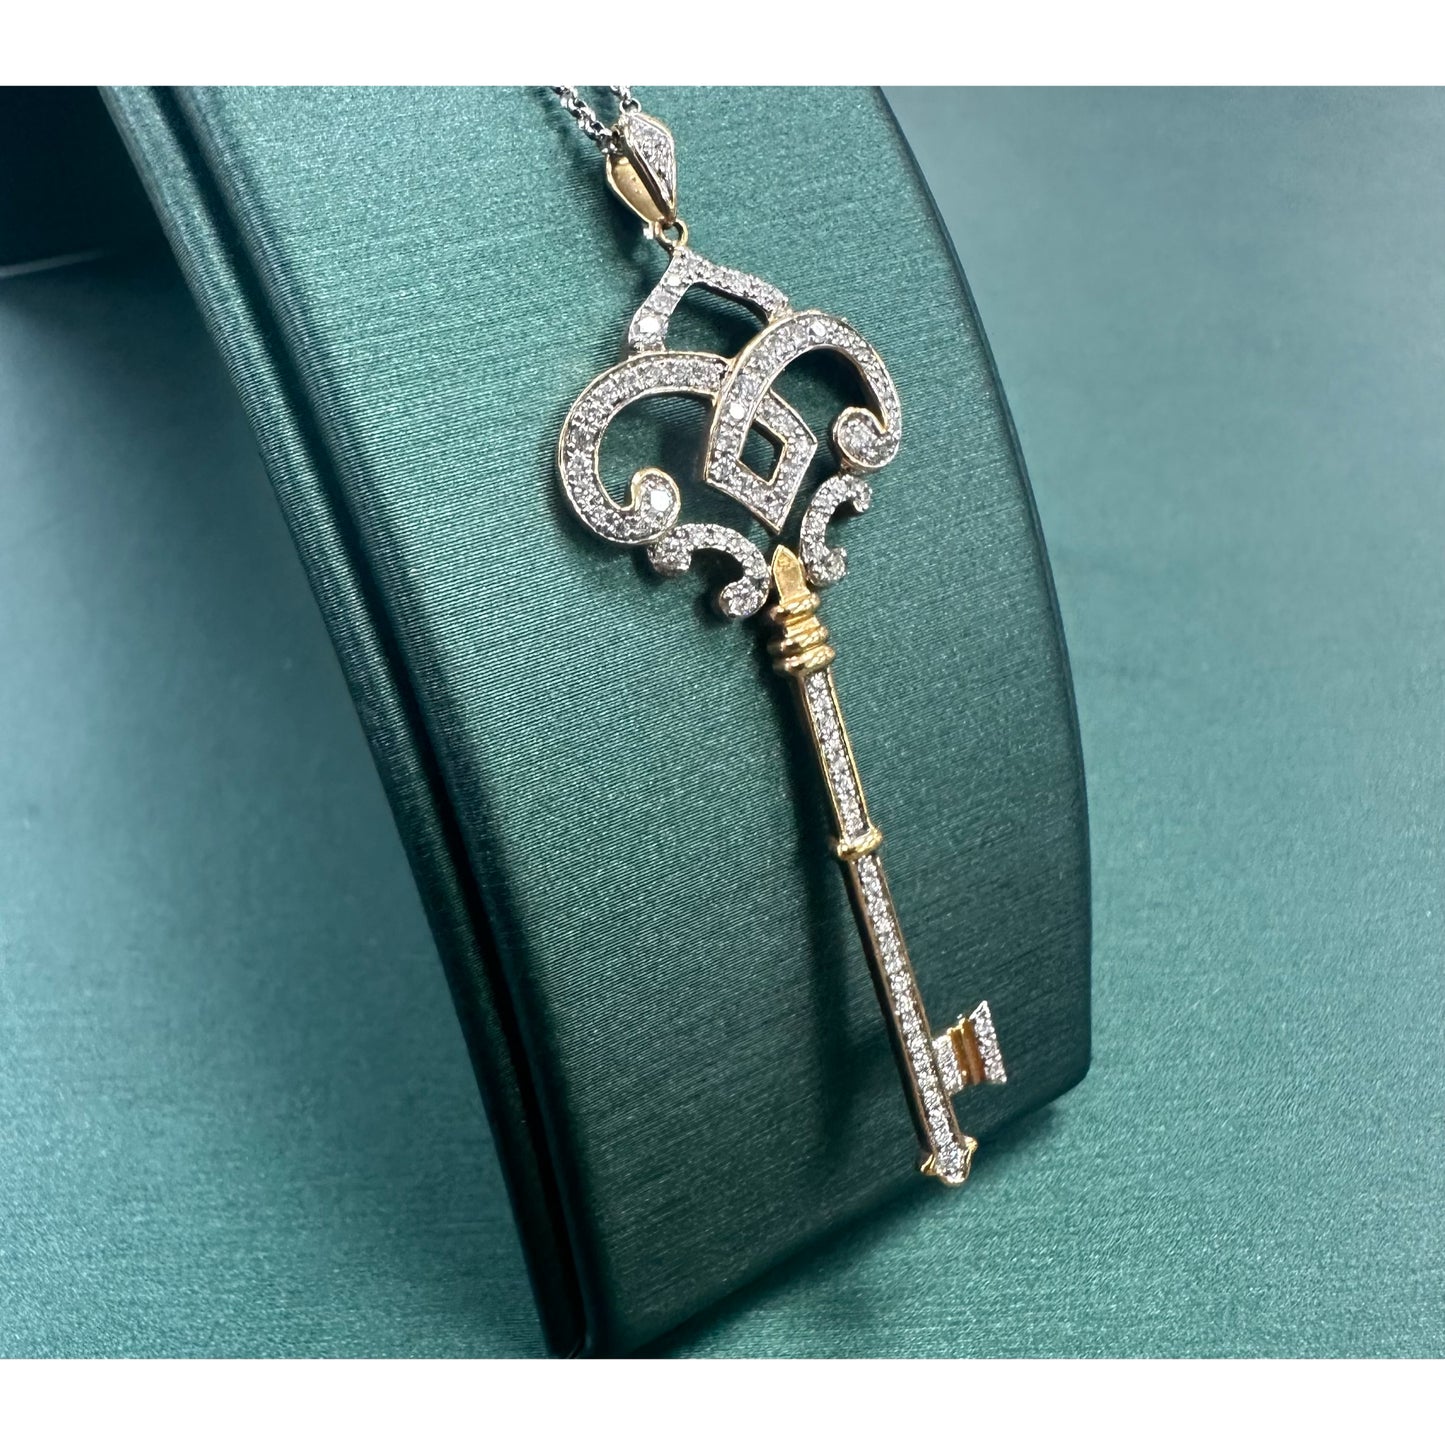 Diamond royal key necklace